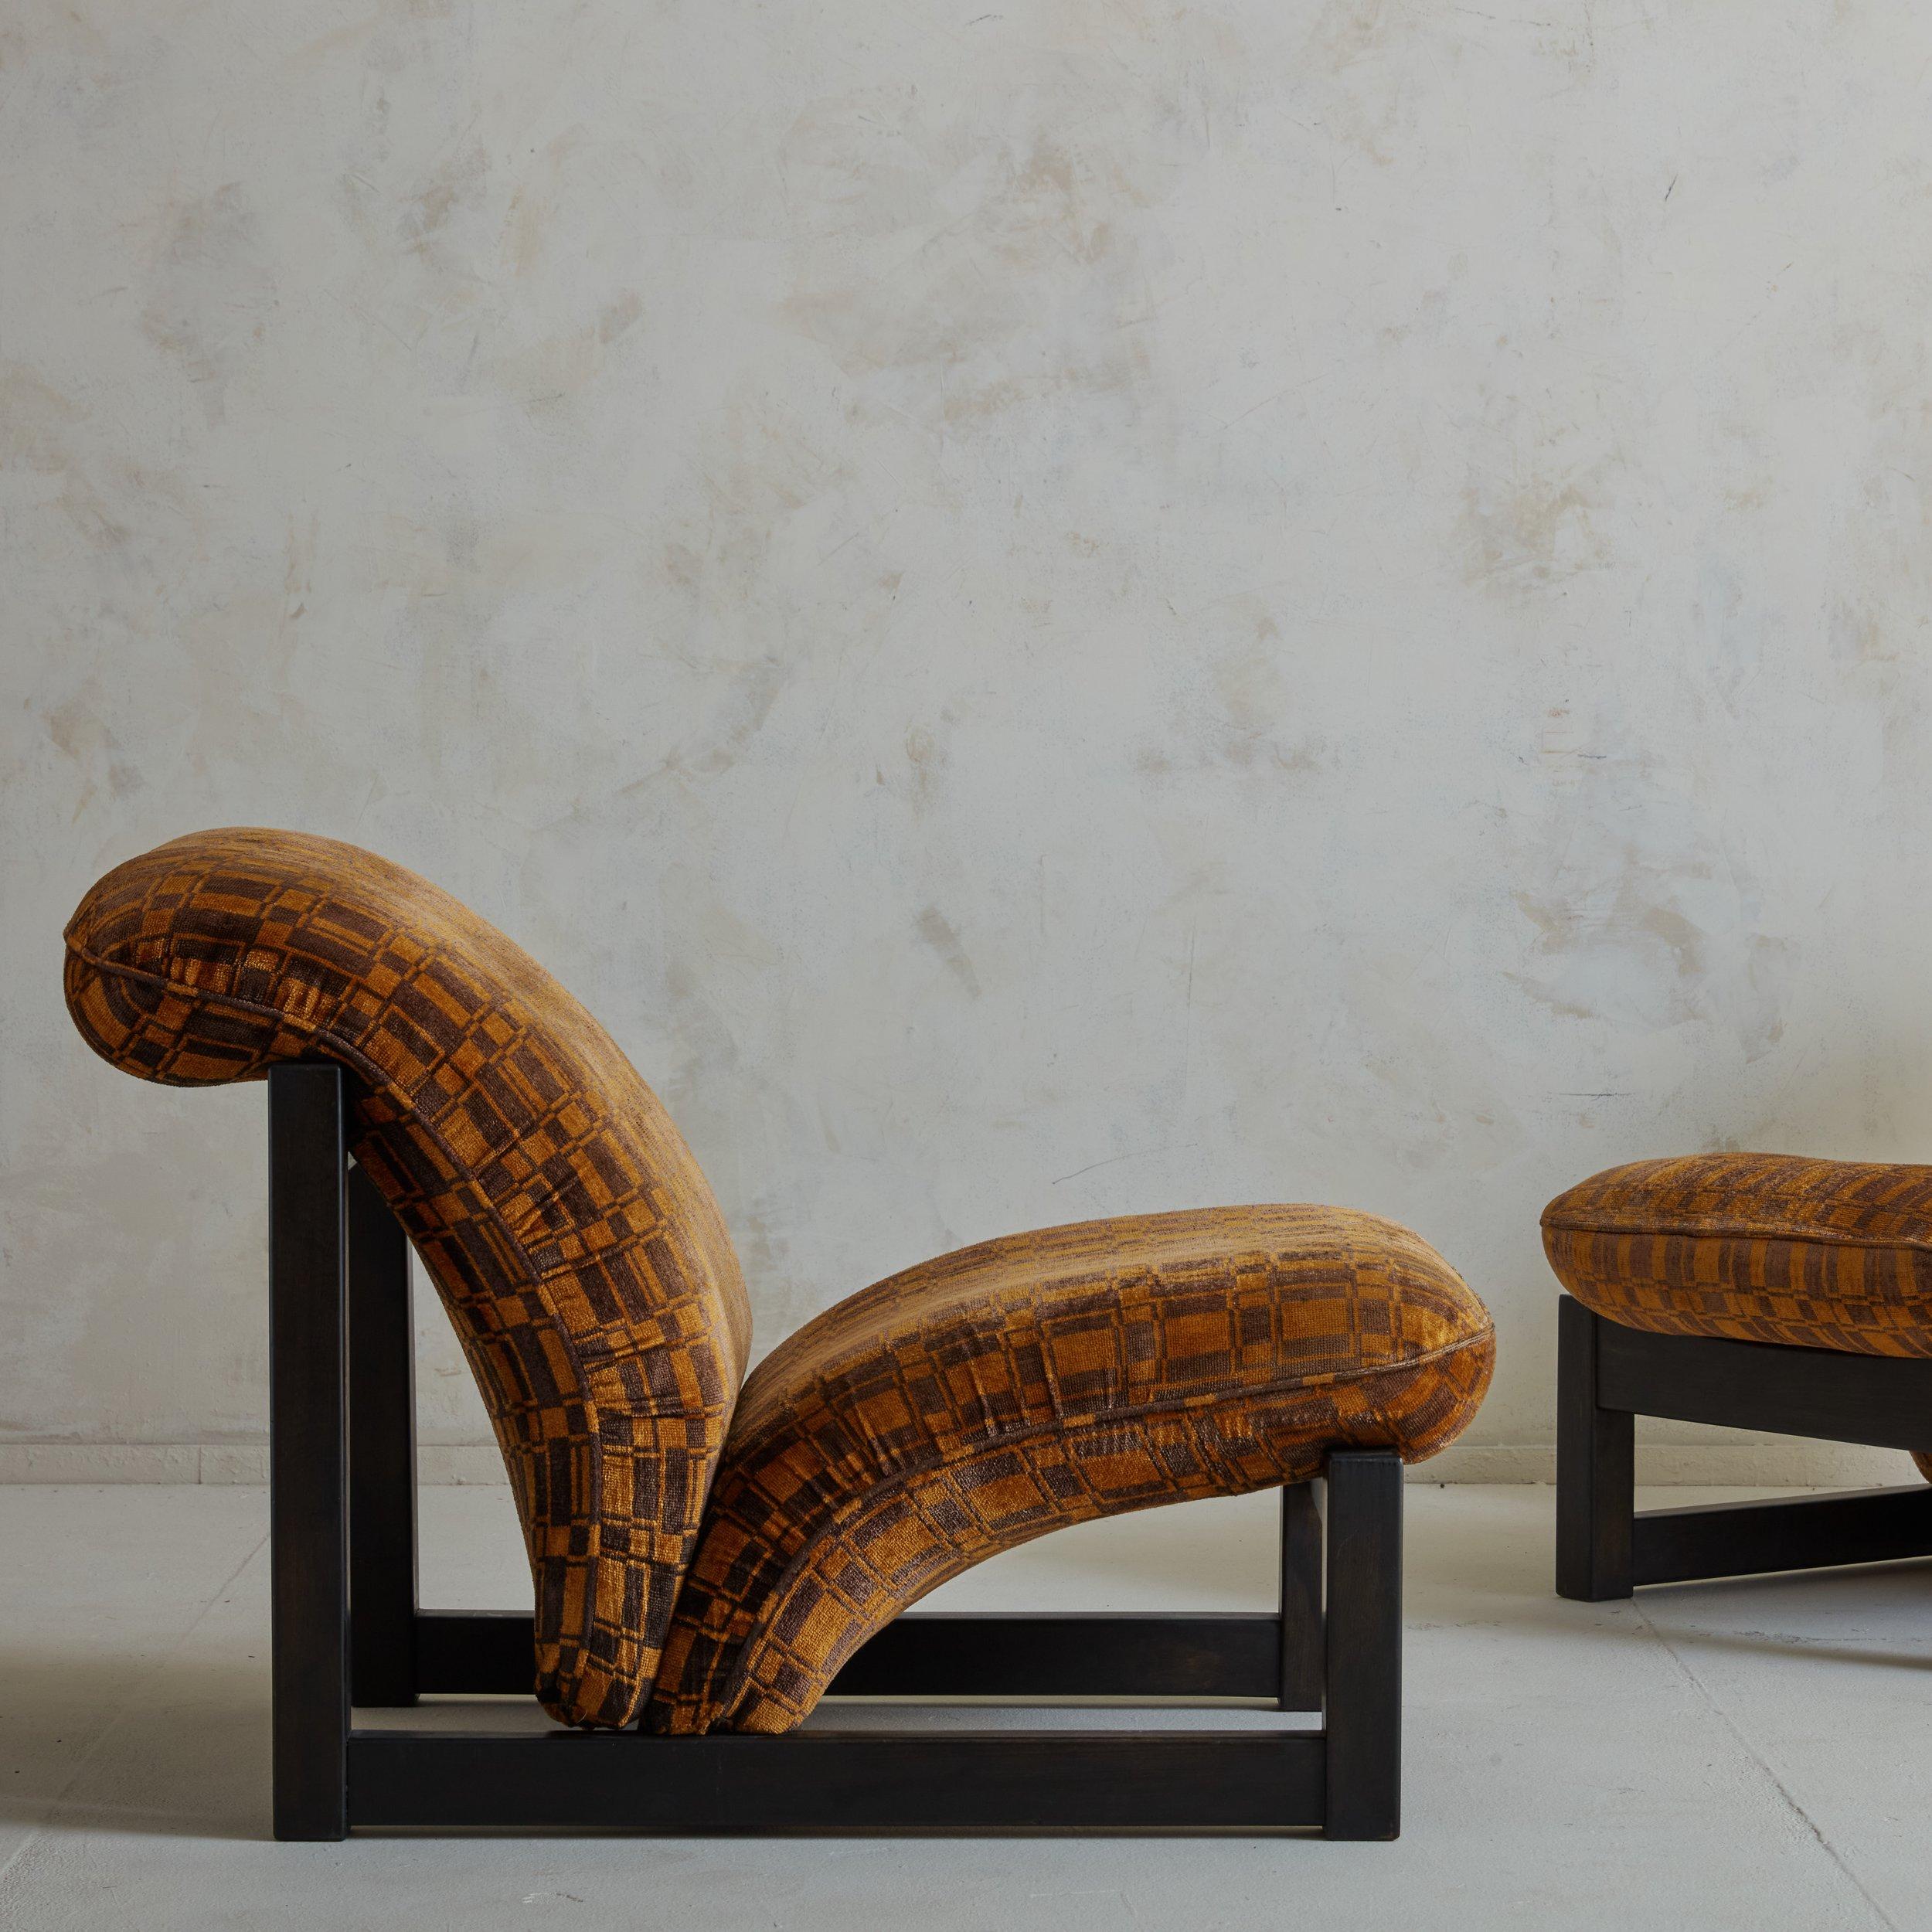 Ein auffälliges Paar italienischer Loungesessel aus den 1970er Jahren mit kantigen Holzrahmen in einem satten schokoladenbraunen Farbton. Diese Stühle haben dramatisch geschwungene Sitze und Rückenlehnen, die ihre ursprüngliche orangefarbene und